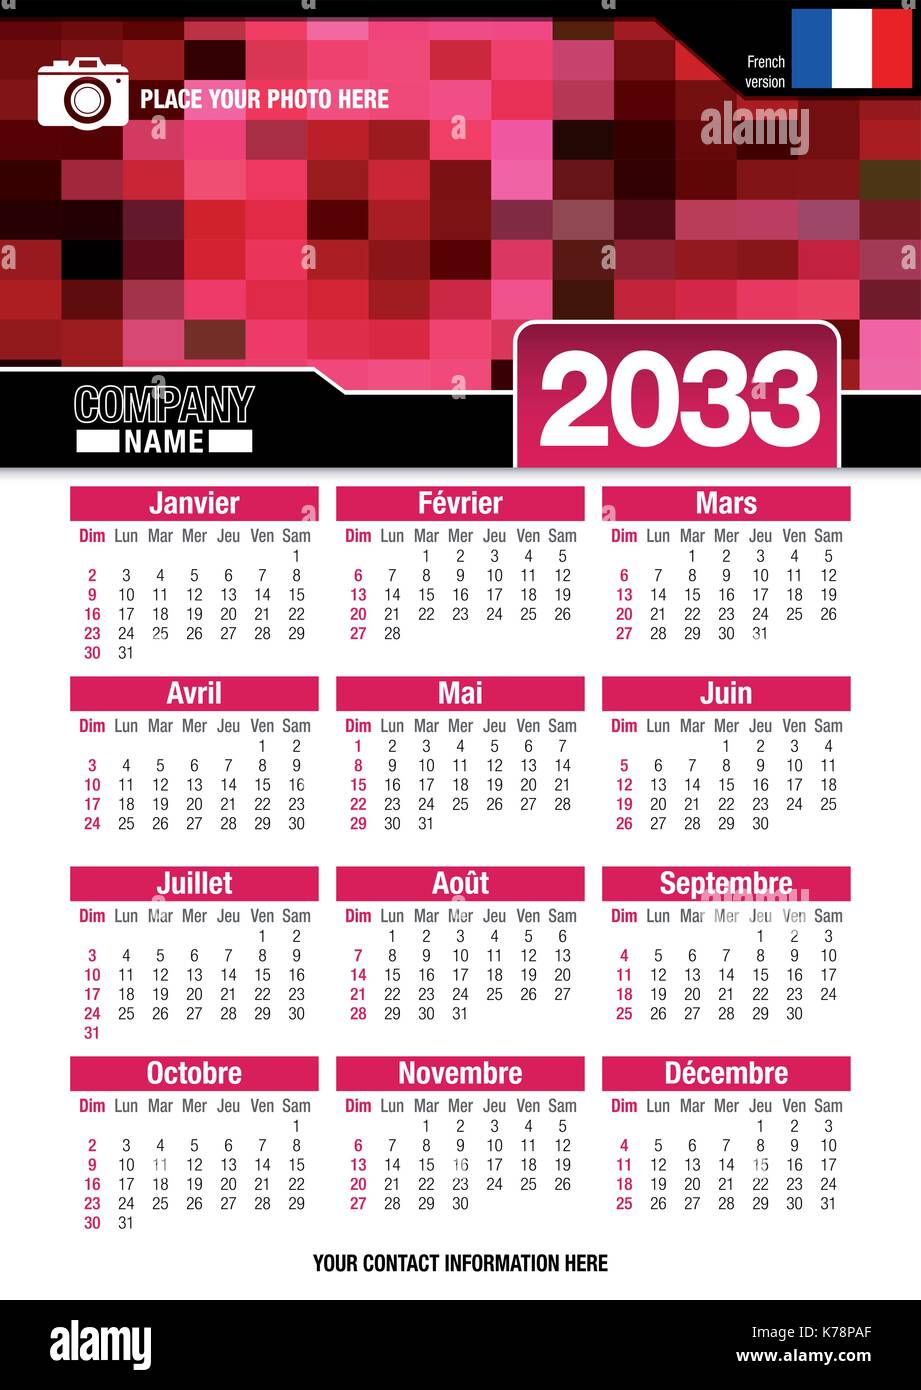 Utile calendario da parete 2033 con design di colori rosso mosaico. Formato A4 verticale. Dimensioni: 210mm x 297mm. Versione francese - immagine vettoriale Illustrazione Vettoriale